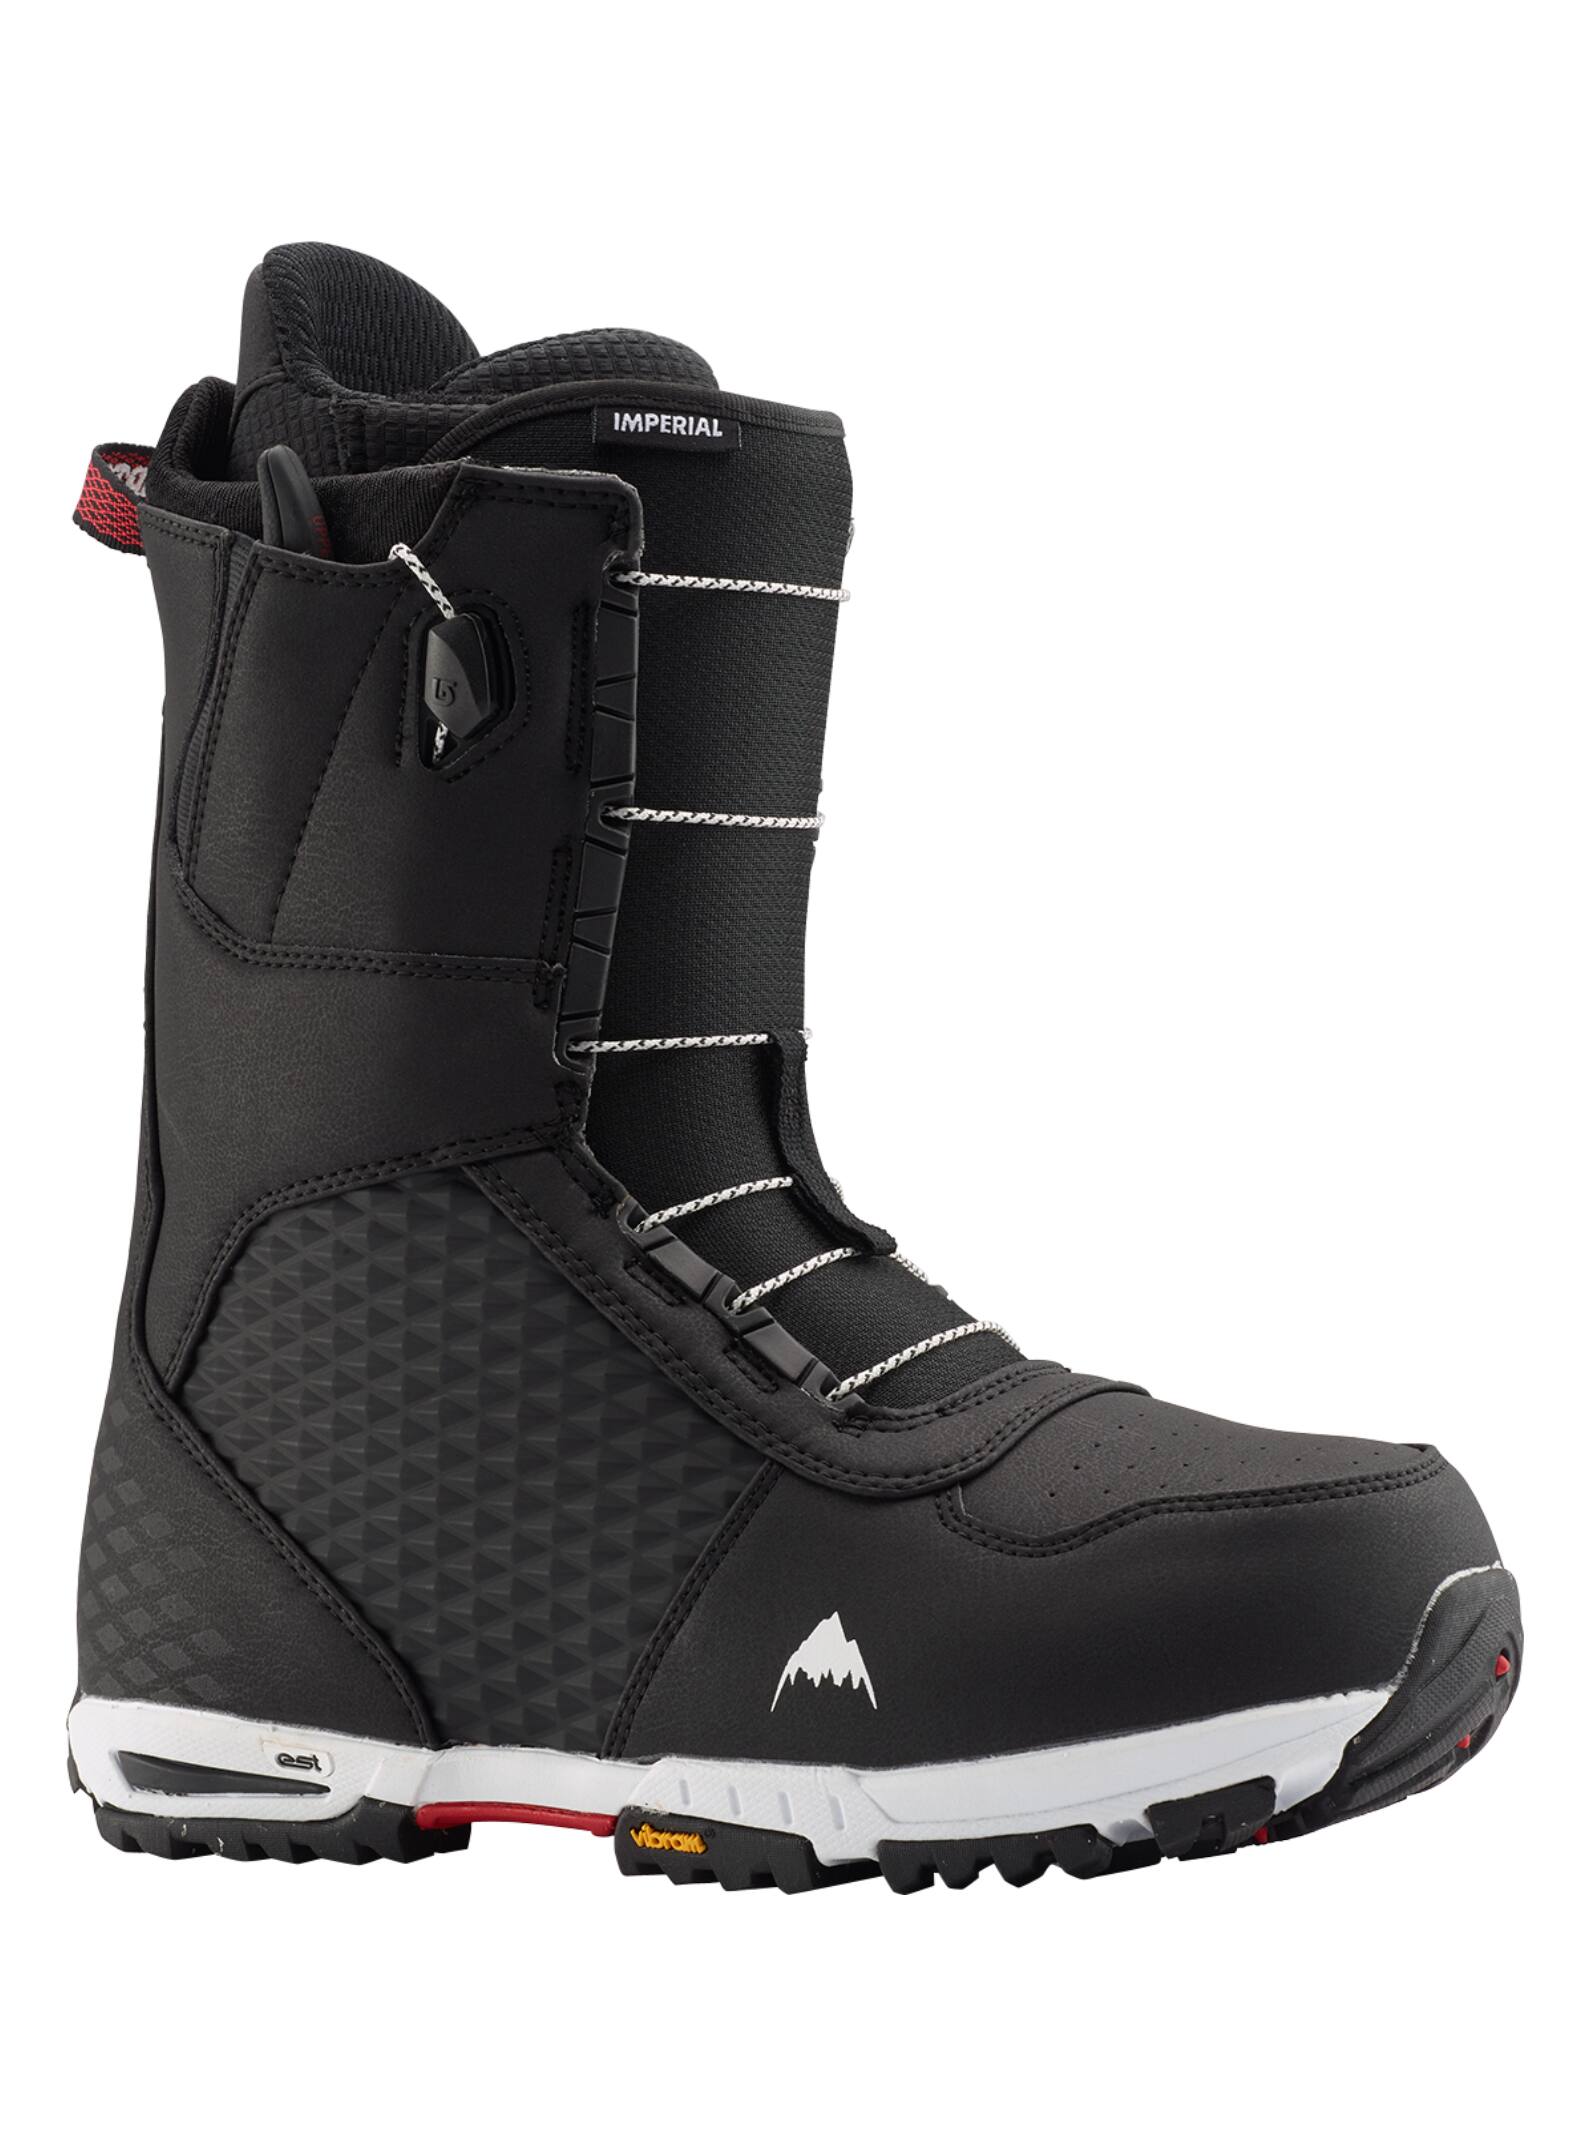 Burton - Boots de snowboard Imperial homme, Black, 10